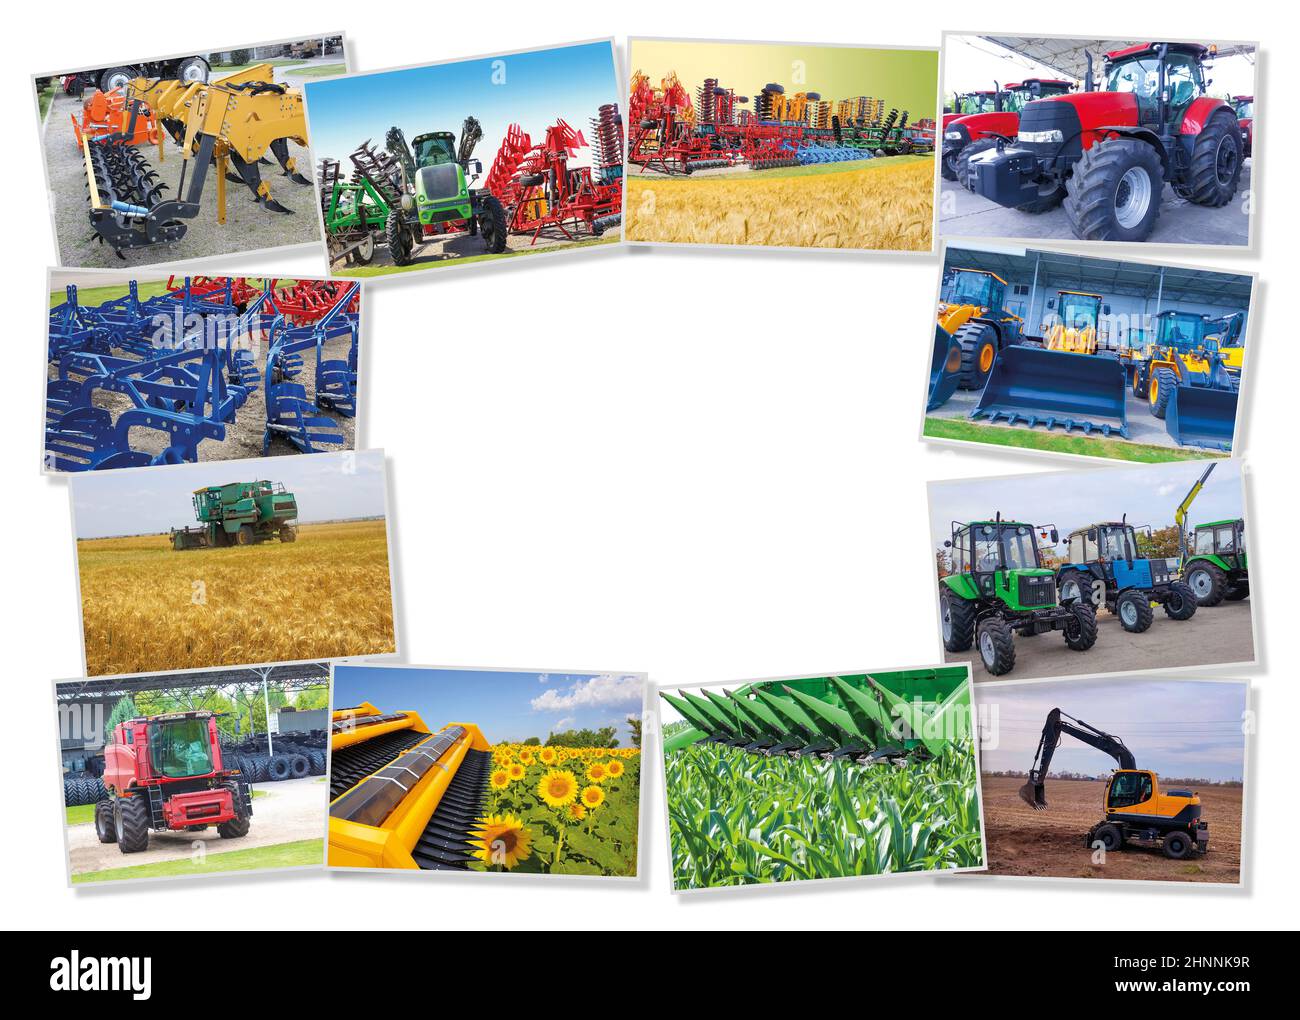 Collage sur la ferme, l'agriculture, l'agriculture. Concept de préparation de l'équipement pour le travail agricole - pour le semis et la récolte du blé Banque D'Images